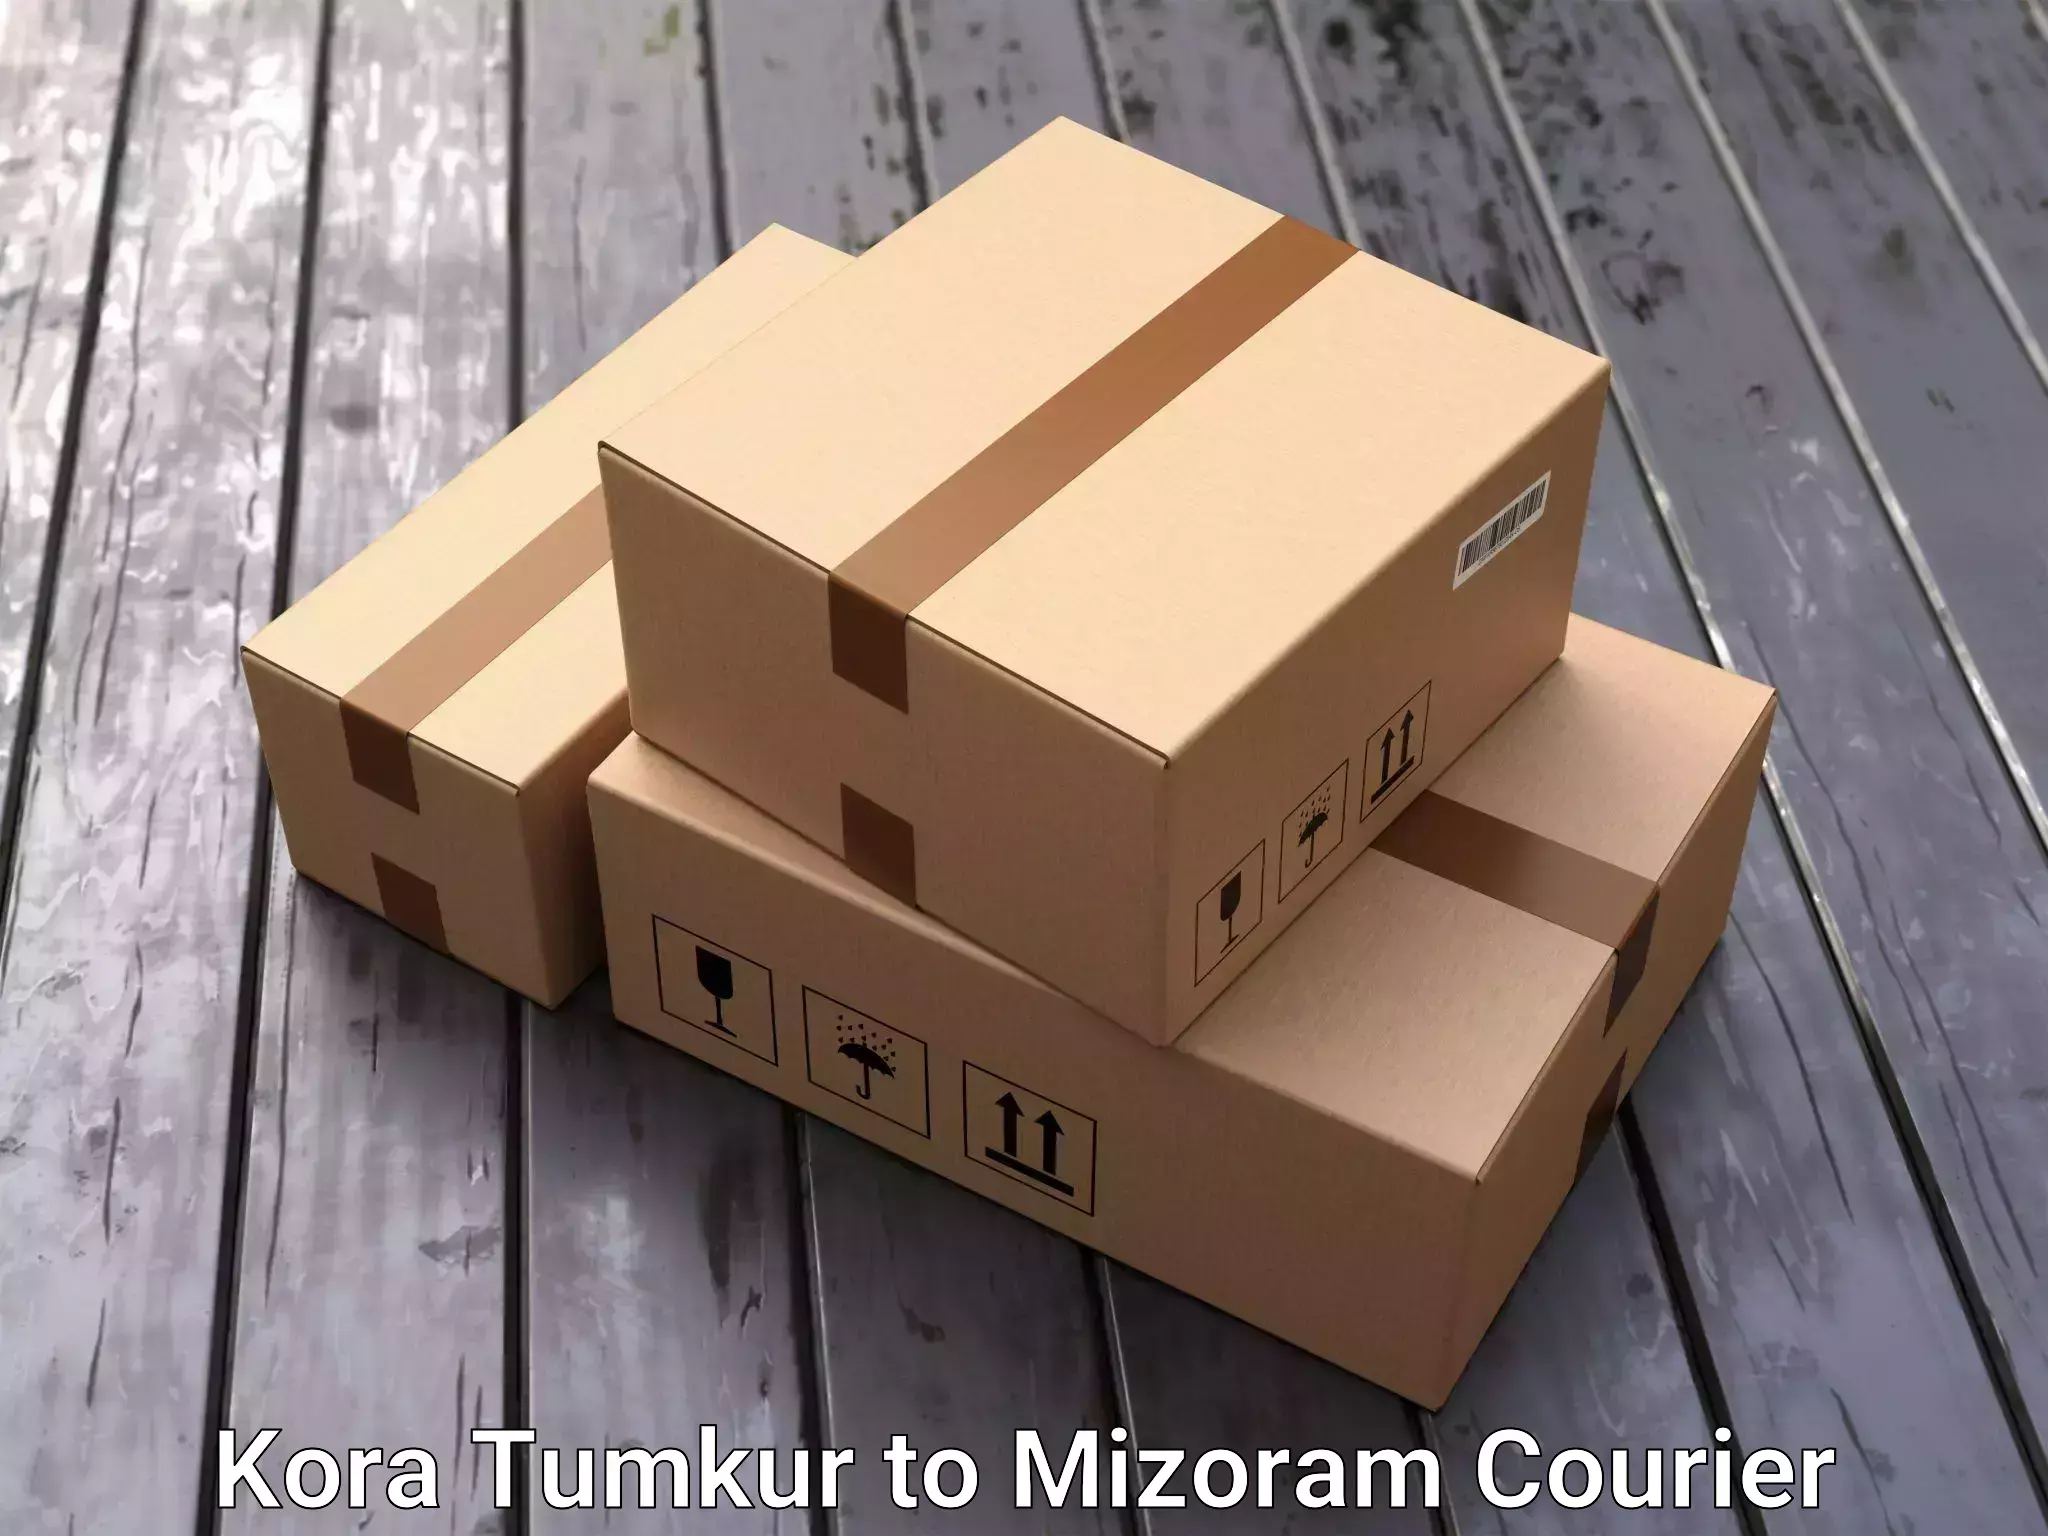 Efficient furniture relocation Kora Tumkur to Mizoram